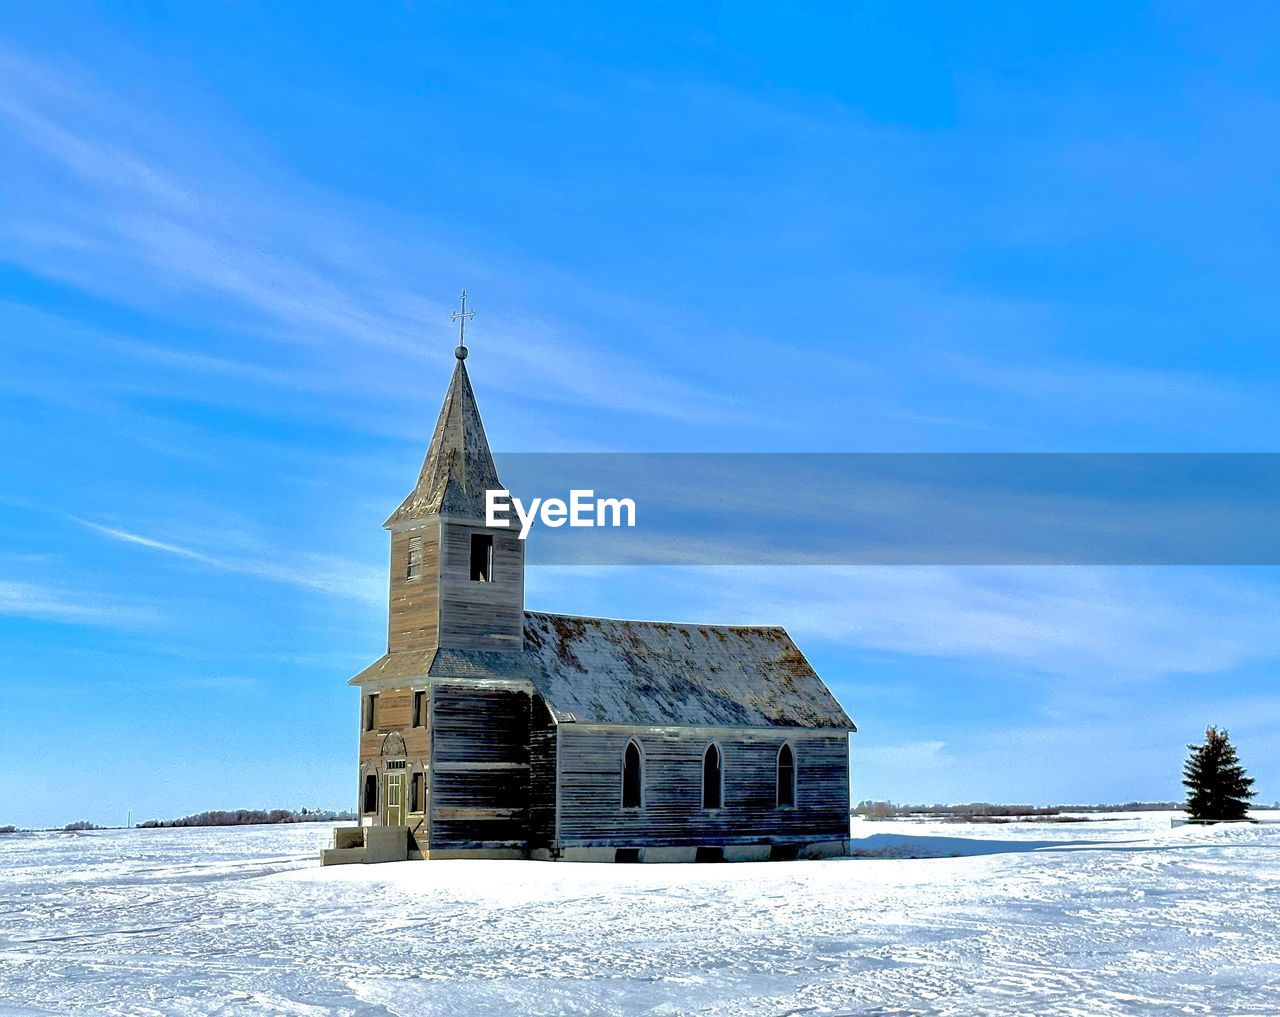 Abandons church in the snowy prairie